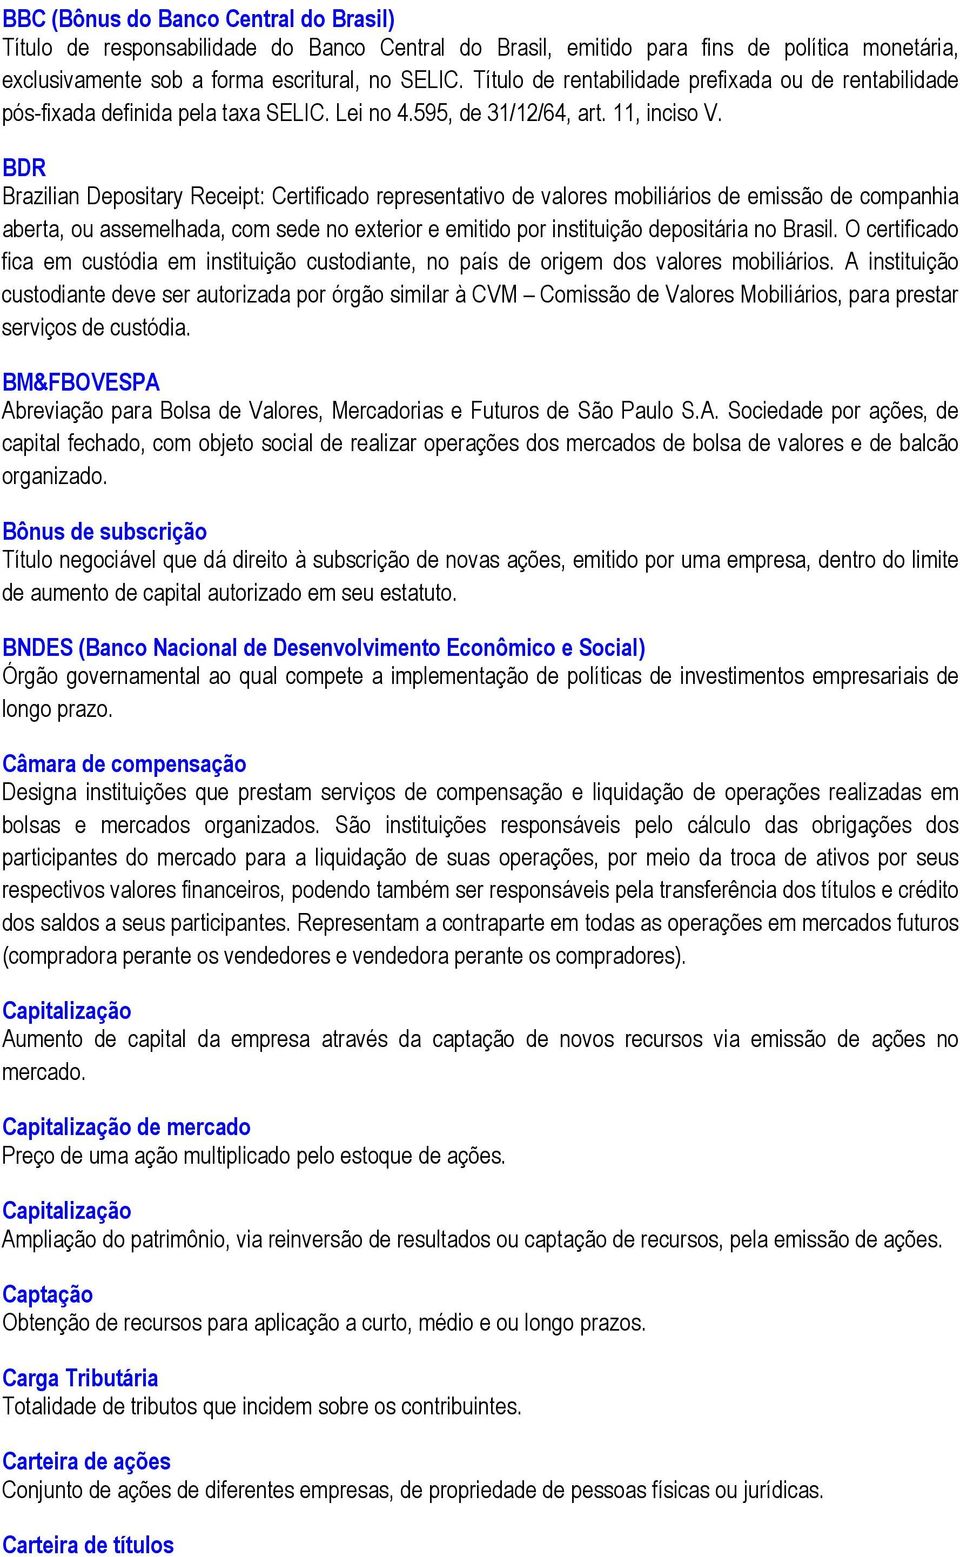 BDR Brazilian Depositary Receipt: Certificado representativo de valores mobiliários de emissão de companhia aberta, ou assemelhada, com sede no exterior e emitido por instituição depositária no